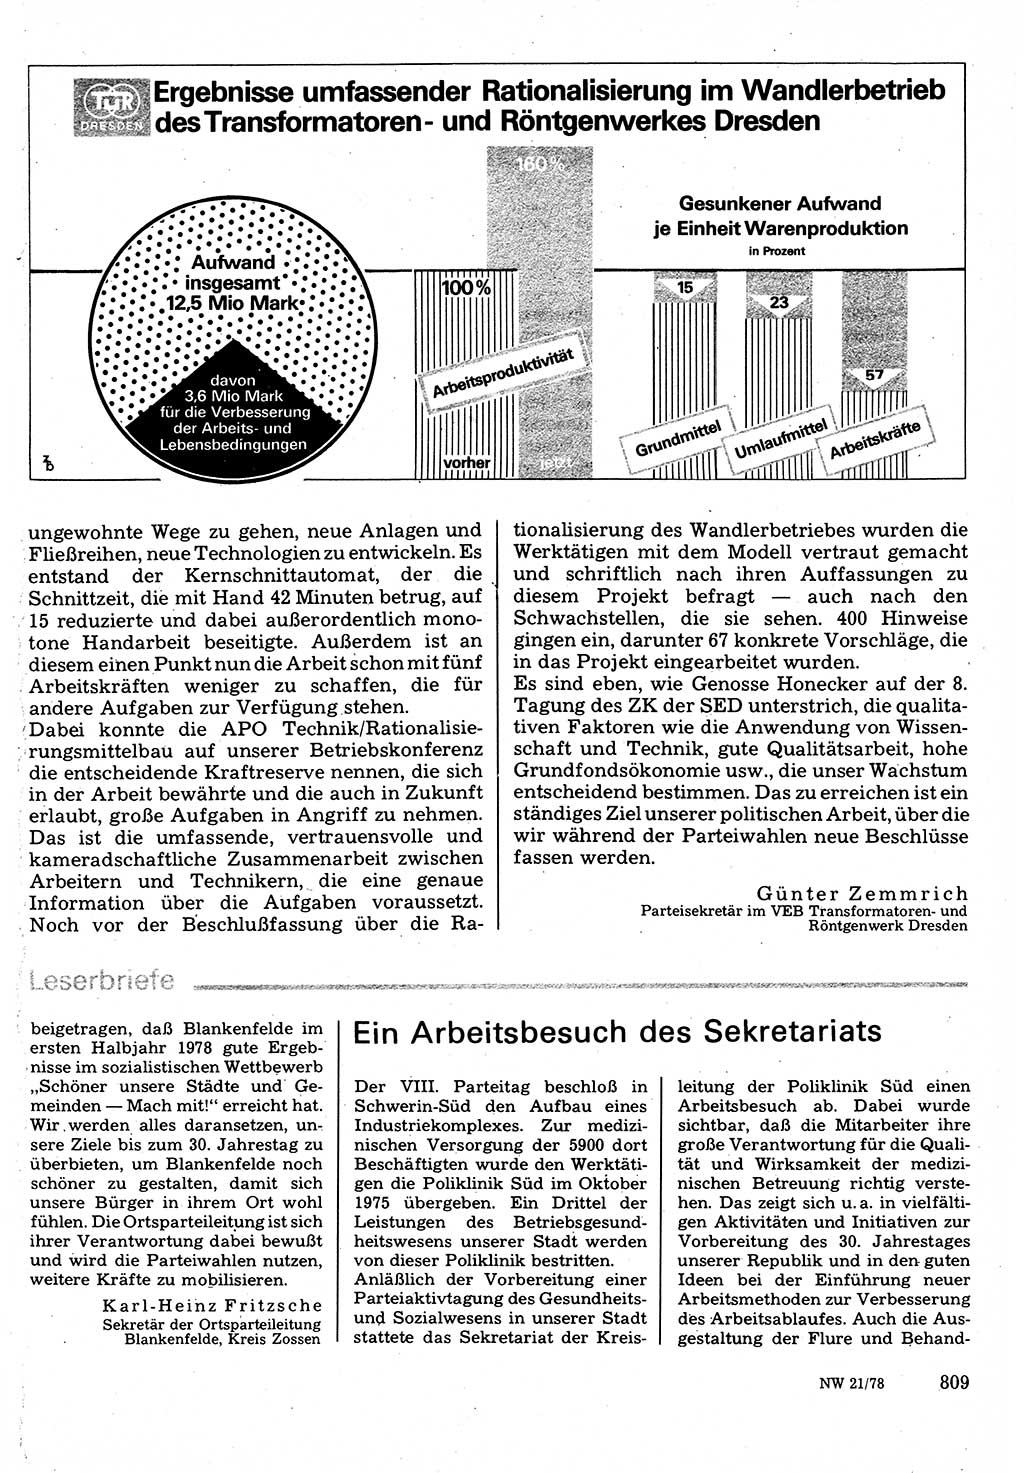 Neuer Weg (NW), Organ des Zentralkomitees (ZK) der SED (Sozialistische Einheitspartei Deutschlands) für Fragen des Parteilebens, 33. Jahrgang [Deutsche Demokratische Republik (DDR)] 1978, Seite 809 (NW ZK SED DDR 1978, S. 809)